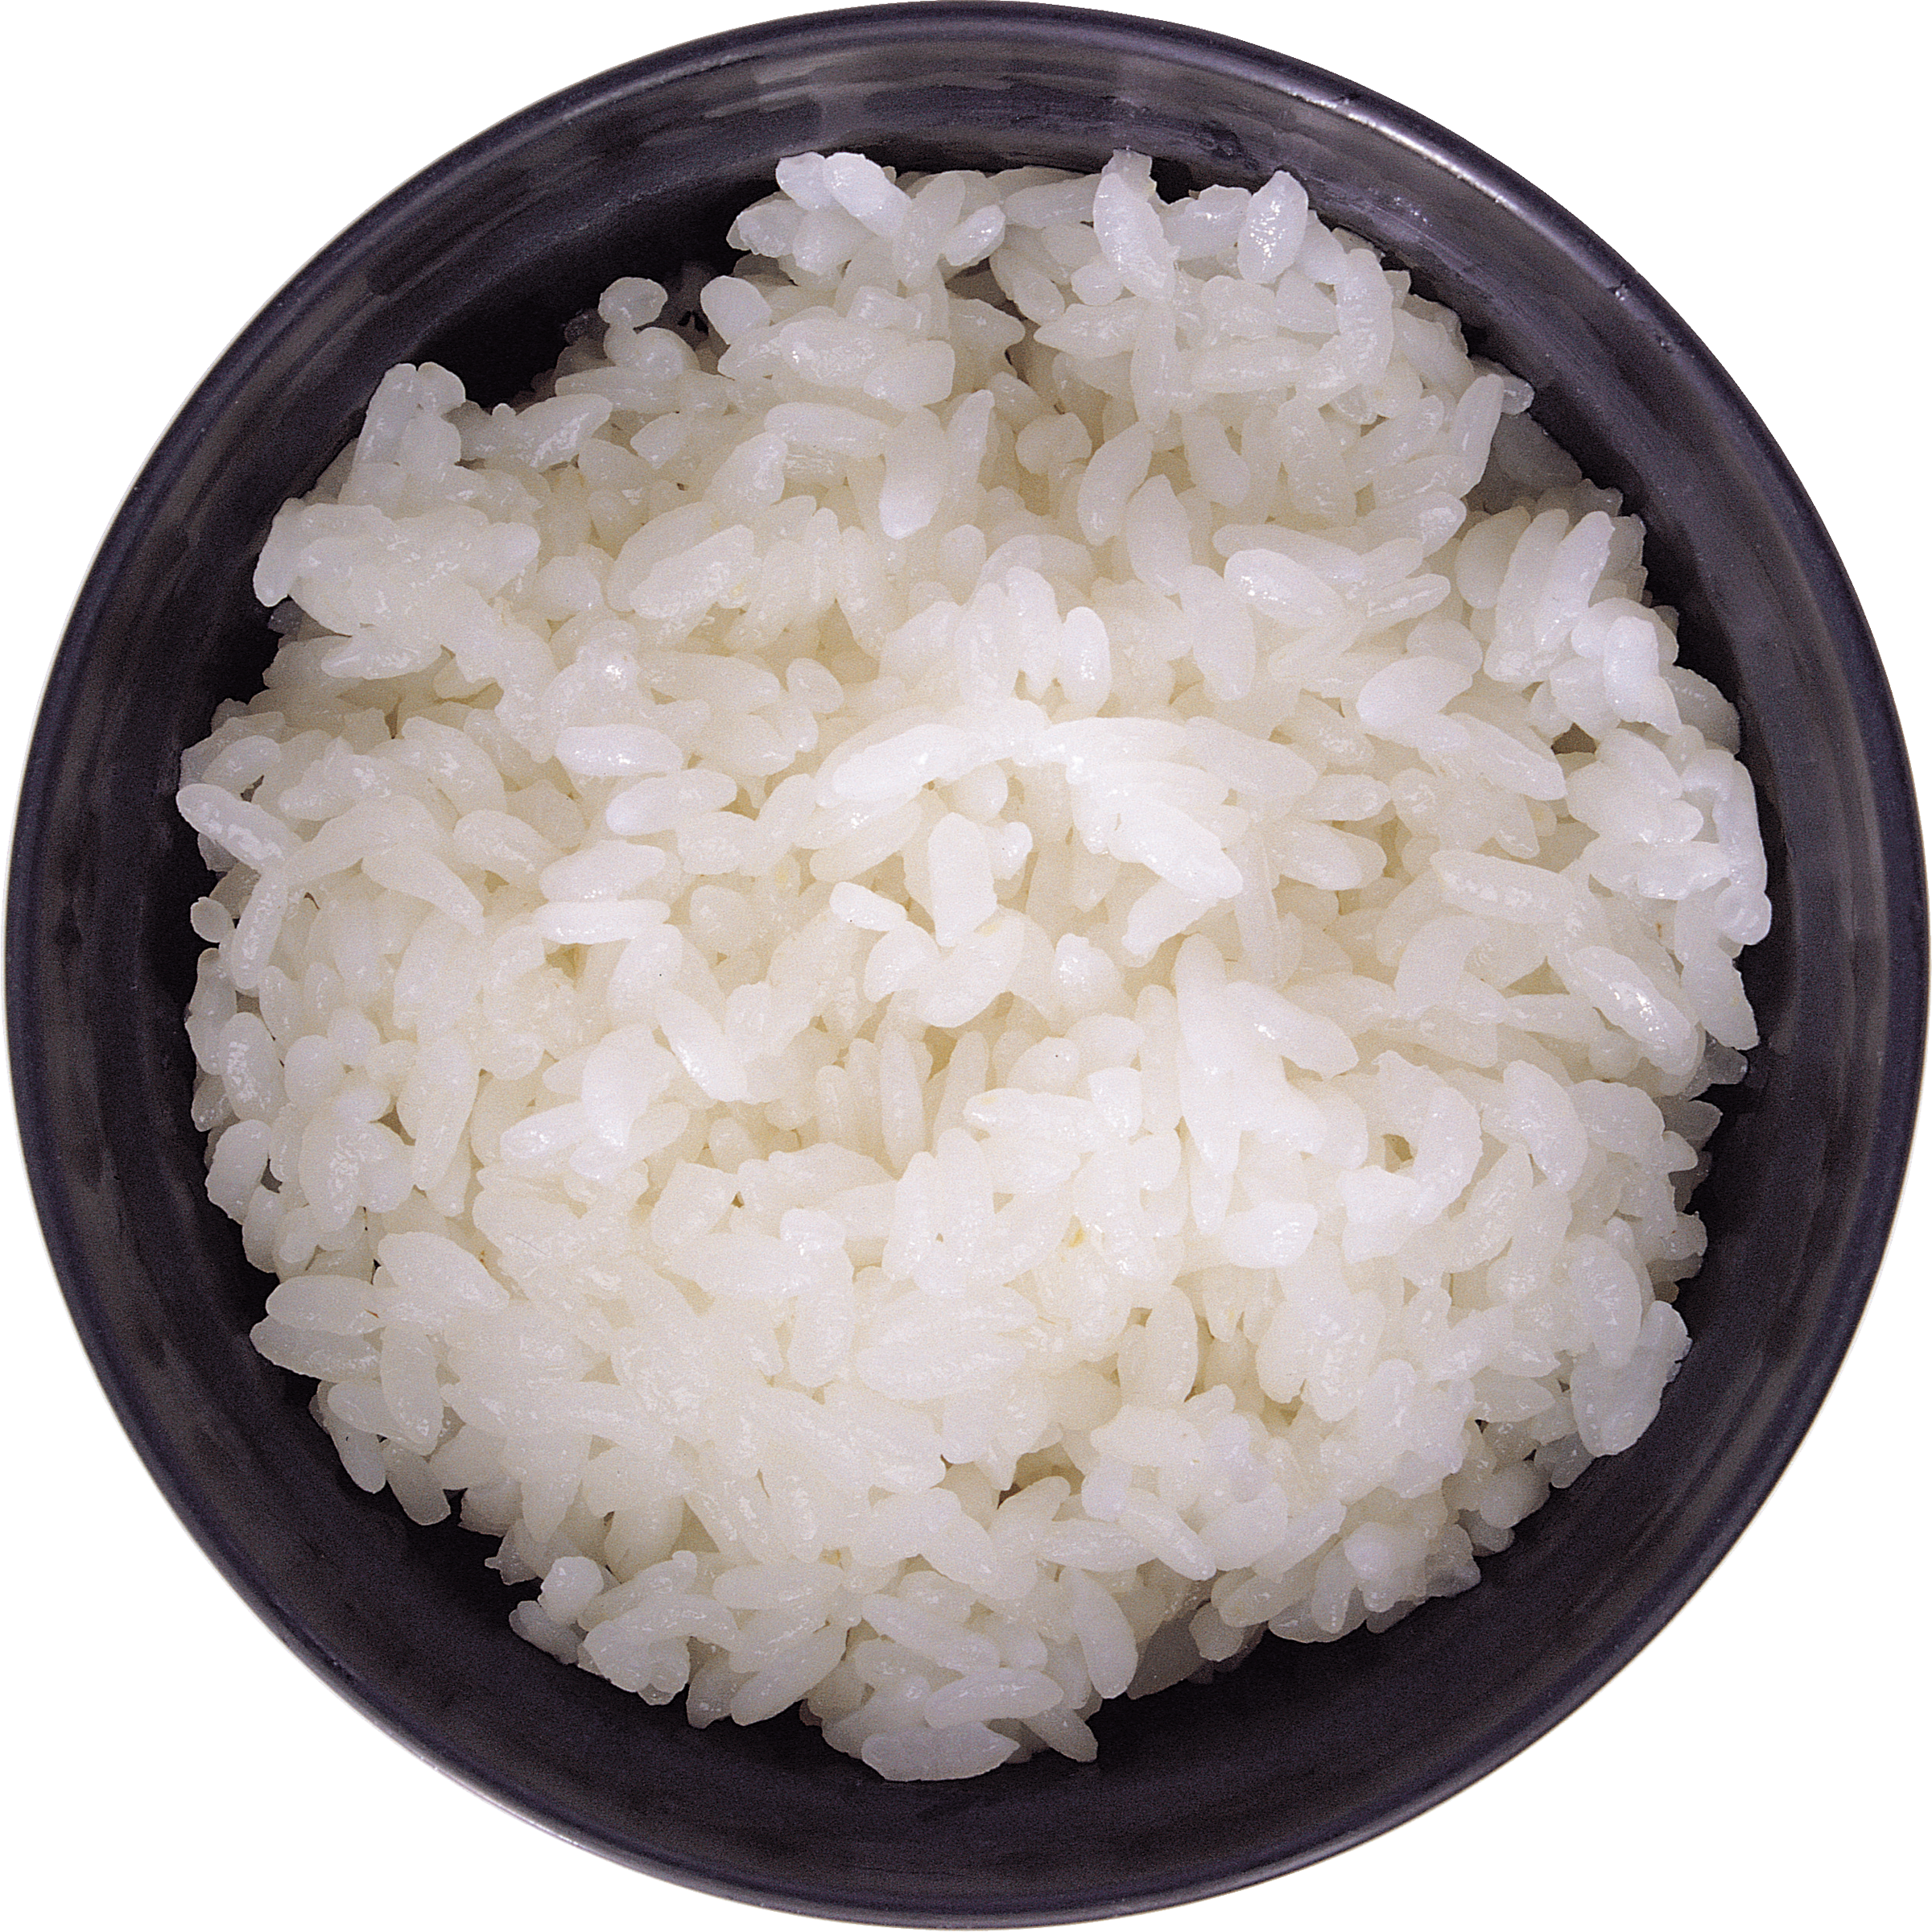 चावल